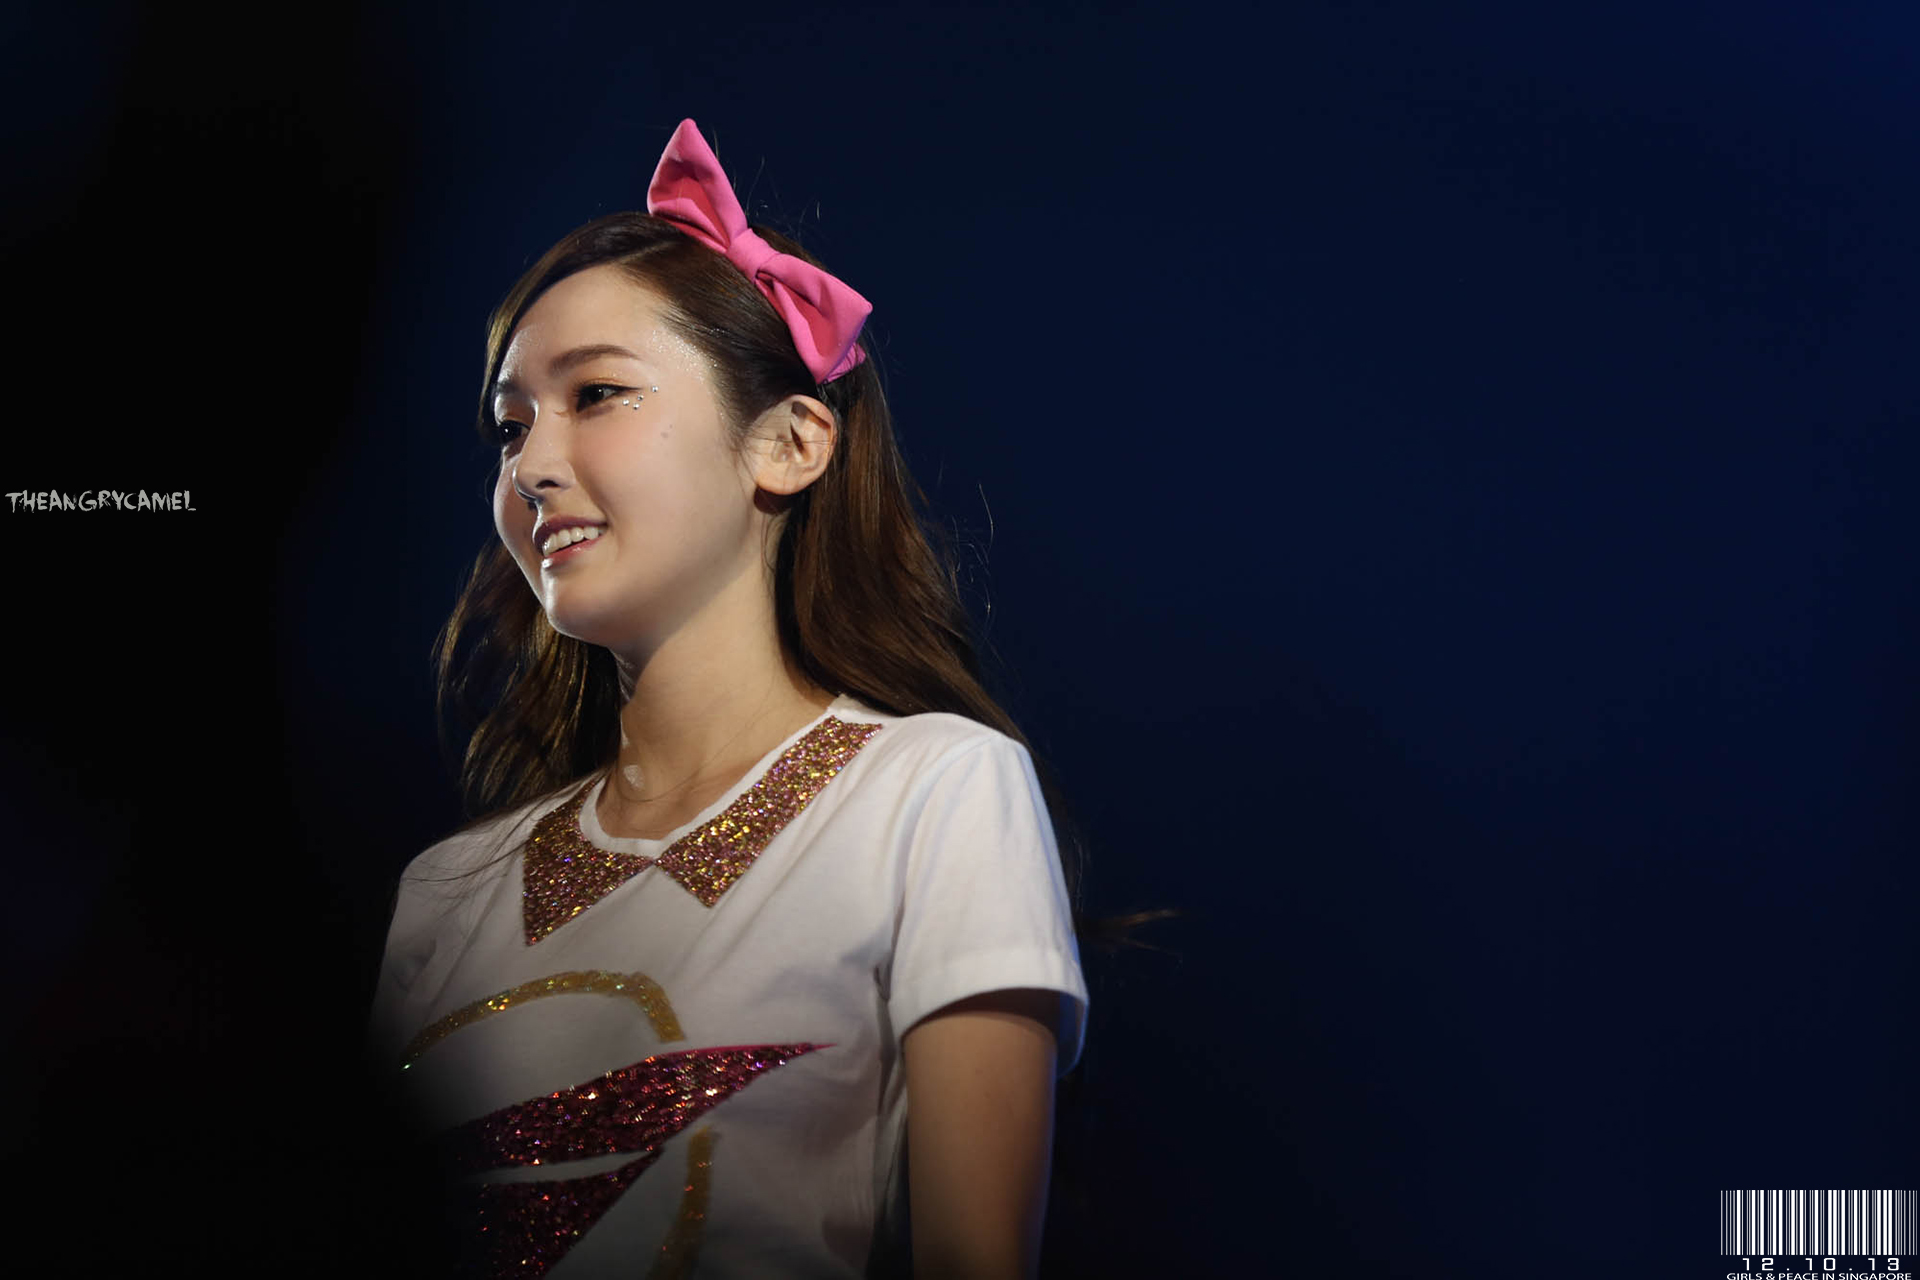 [PIC][11-10-2013]SNSD xuất phát đi Singapore để biểu diễn "2013 Girls' Generation's World Tour – Girls & Peace" vào sáng nay - Page 4 10230171596_425c45518b_o